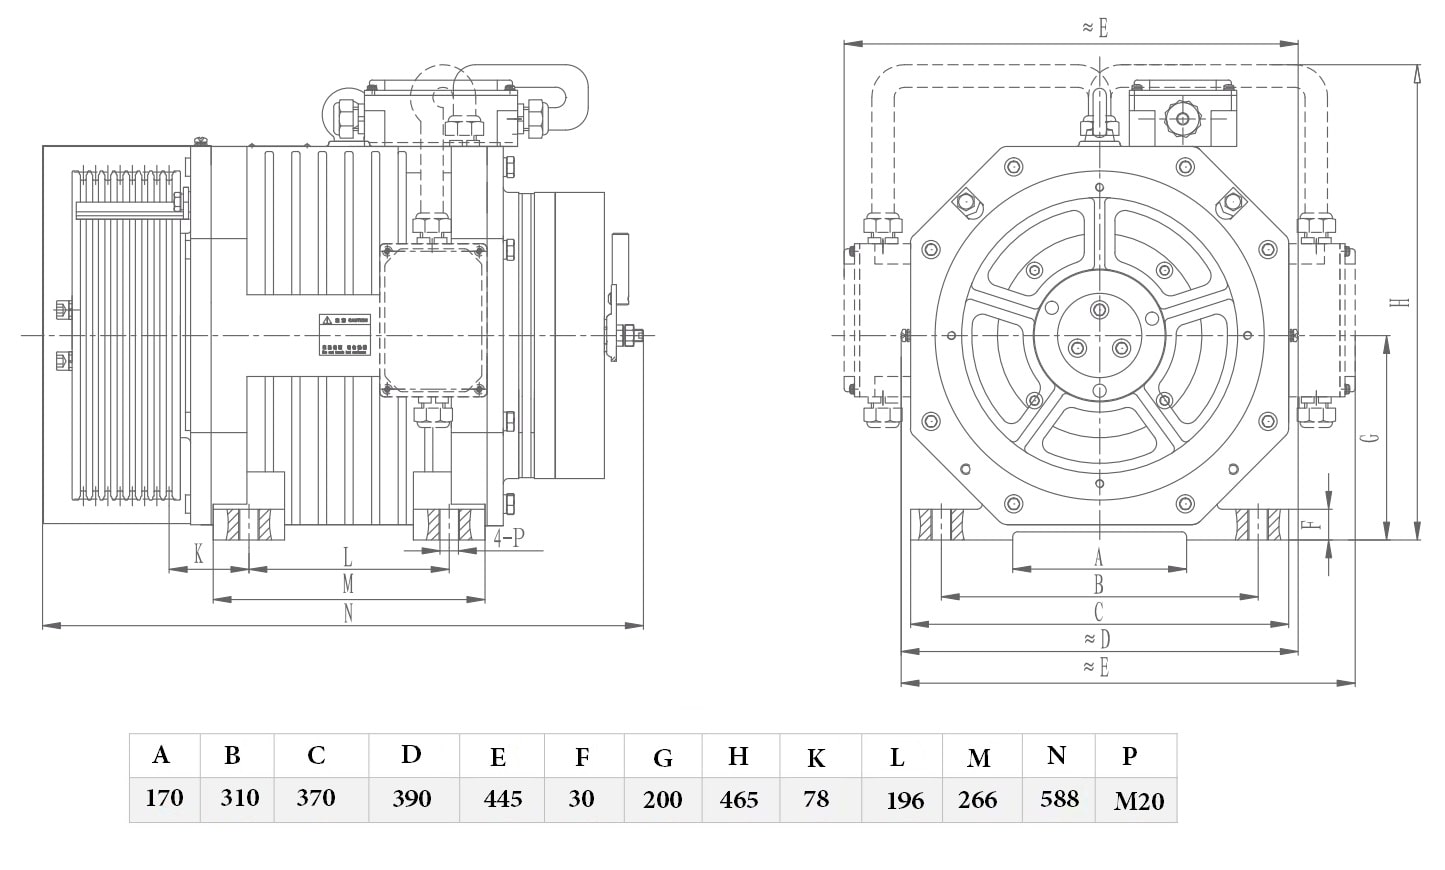 نقشه موتور بلولایت بشکه ای سری سی و دی WYT-L1.0C و WYT-L1.0D